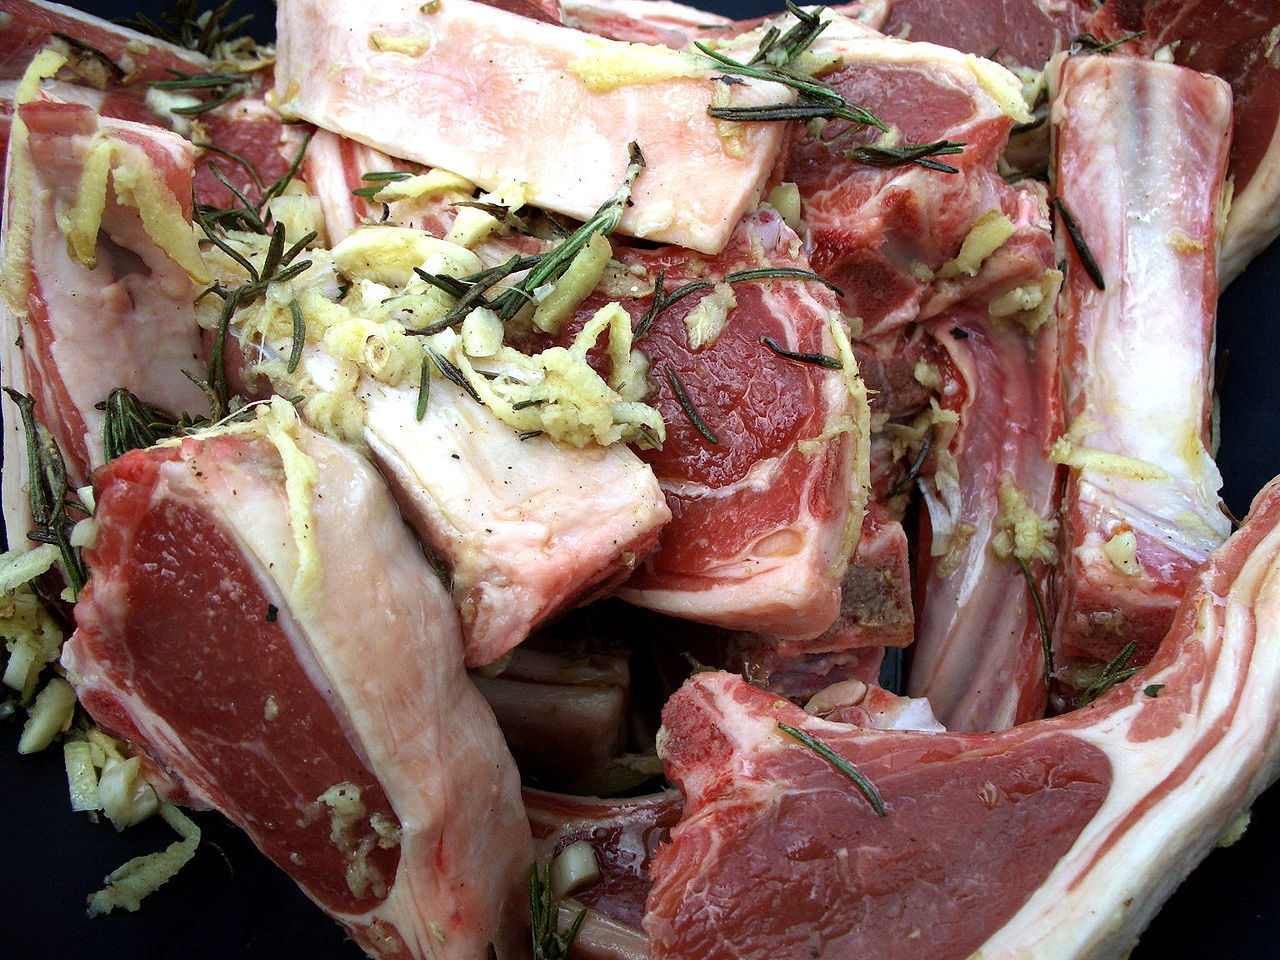 Италия стала первой страной в ЕС, где было принято решение о запрете производства искусственного мяса